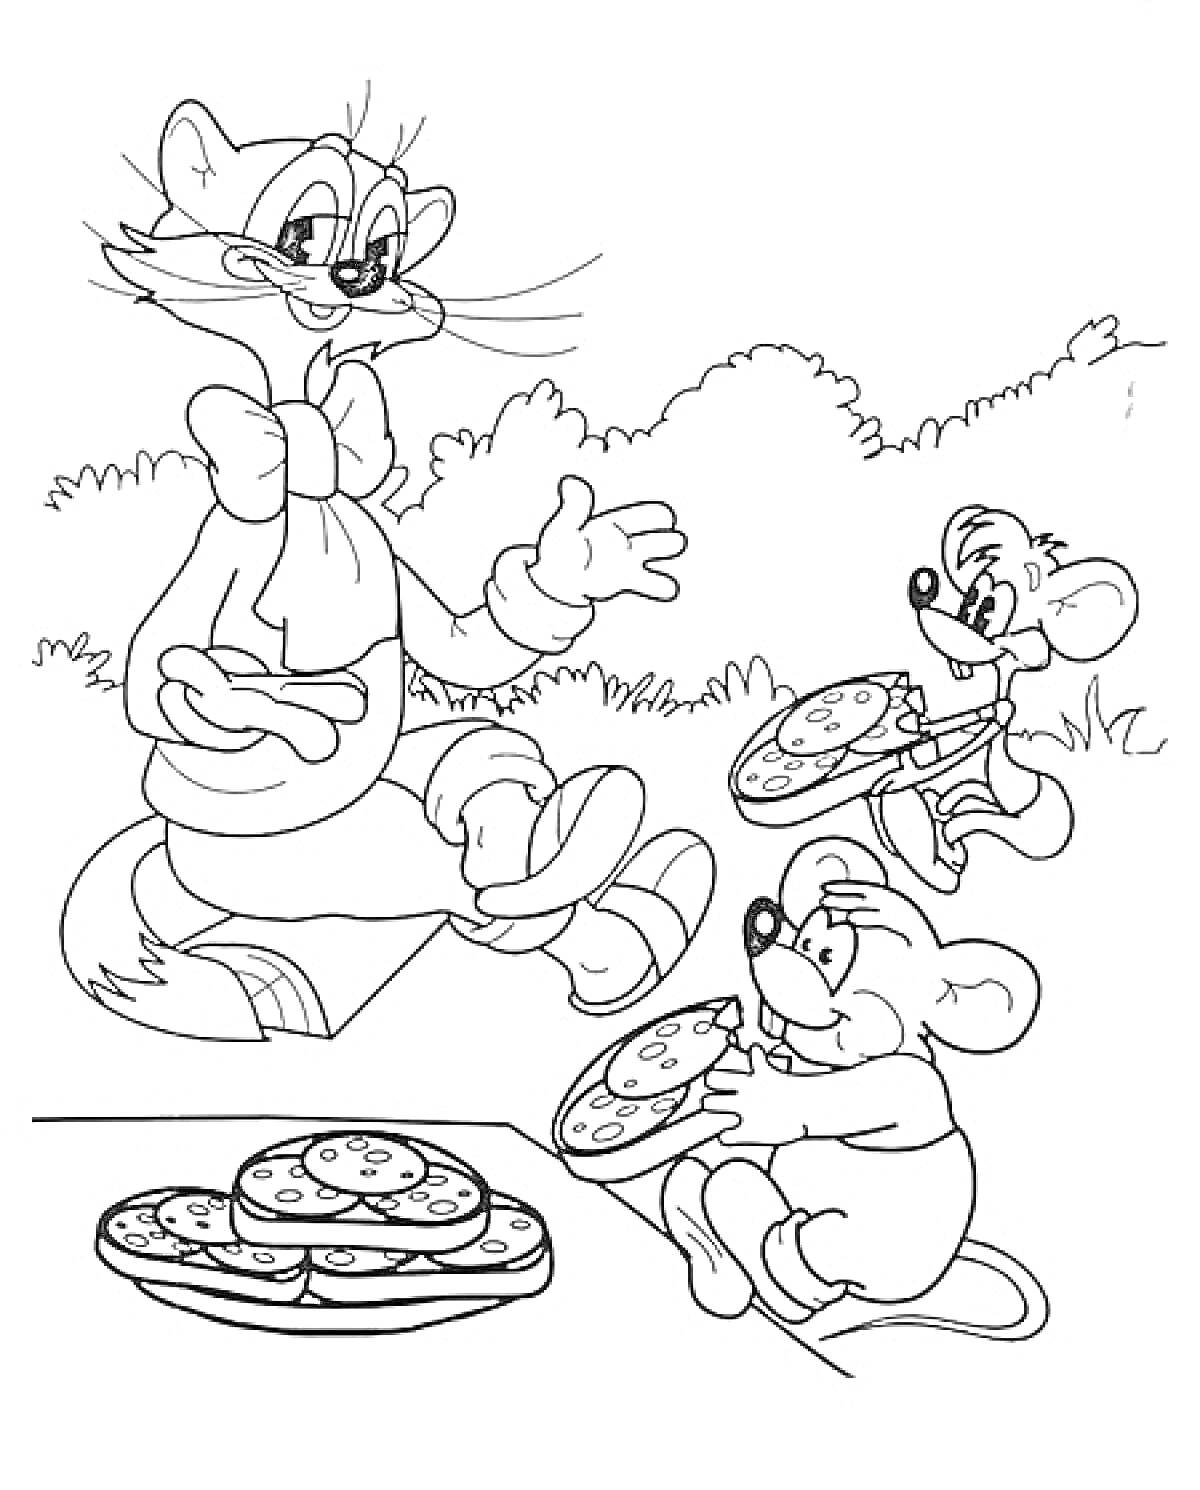 Кот Леопольд и мыши на пикнике с пиццей